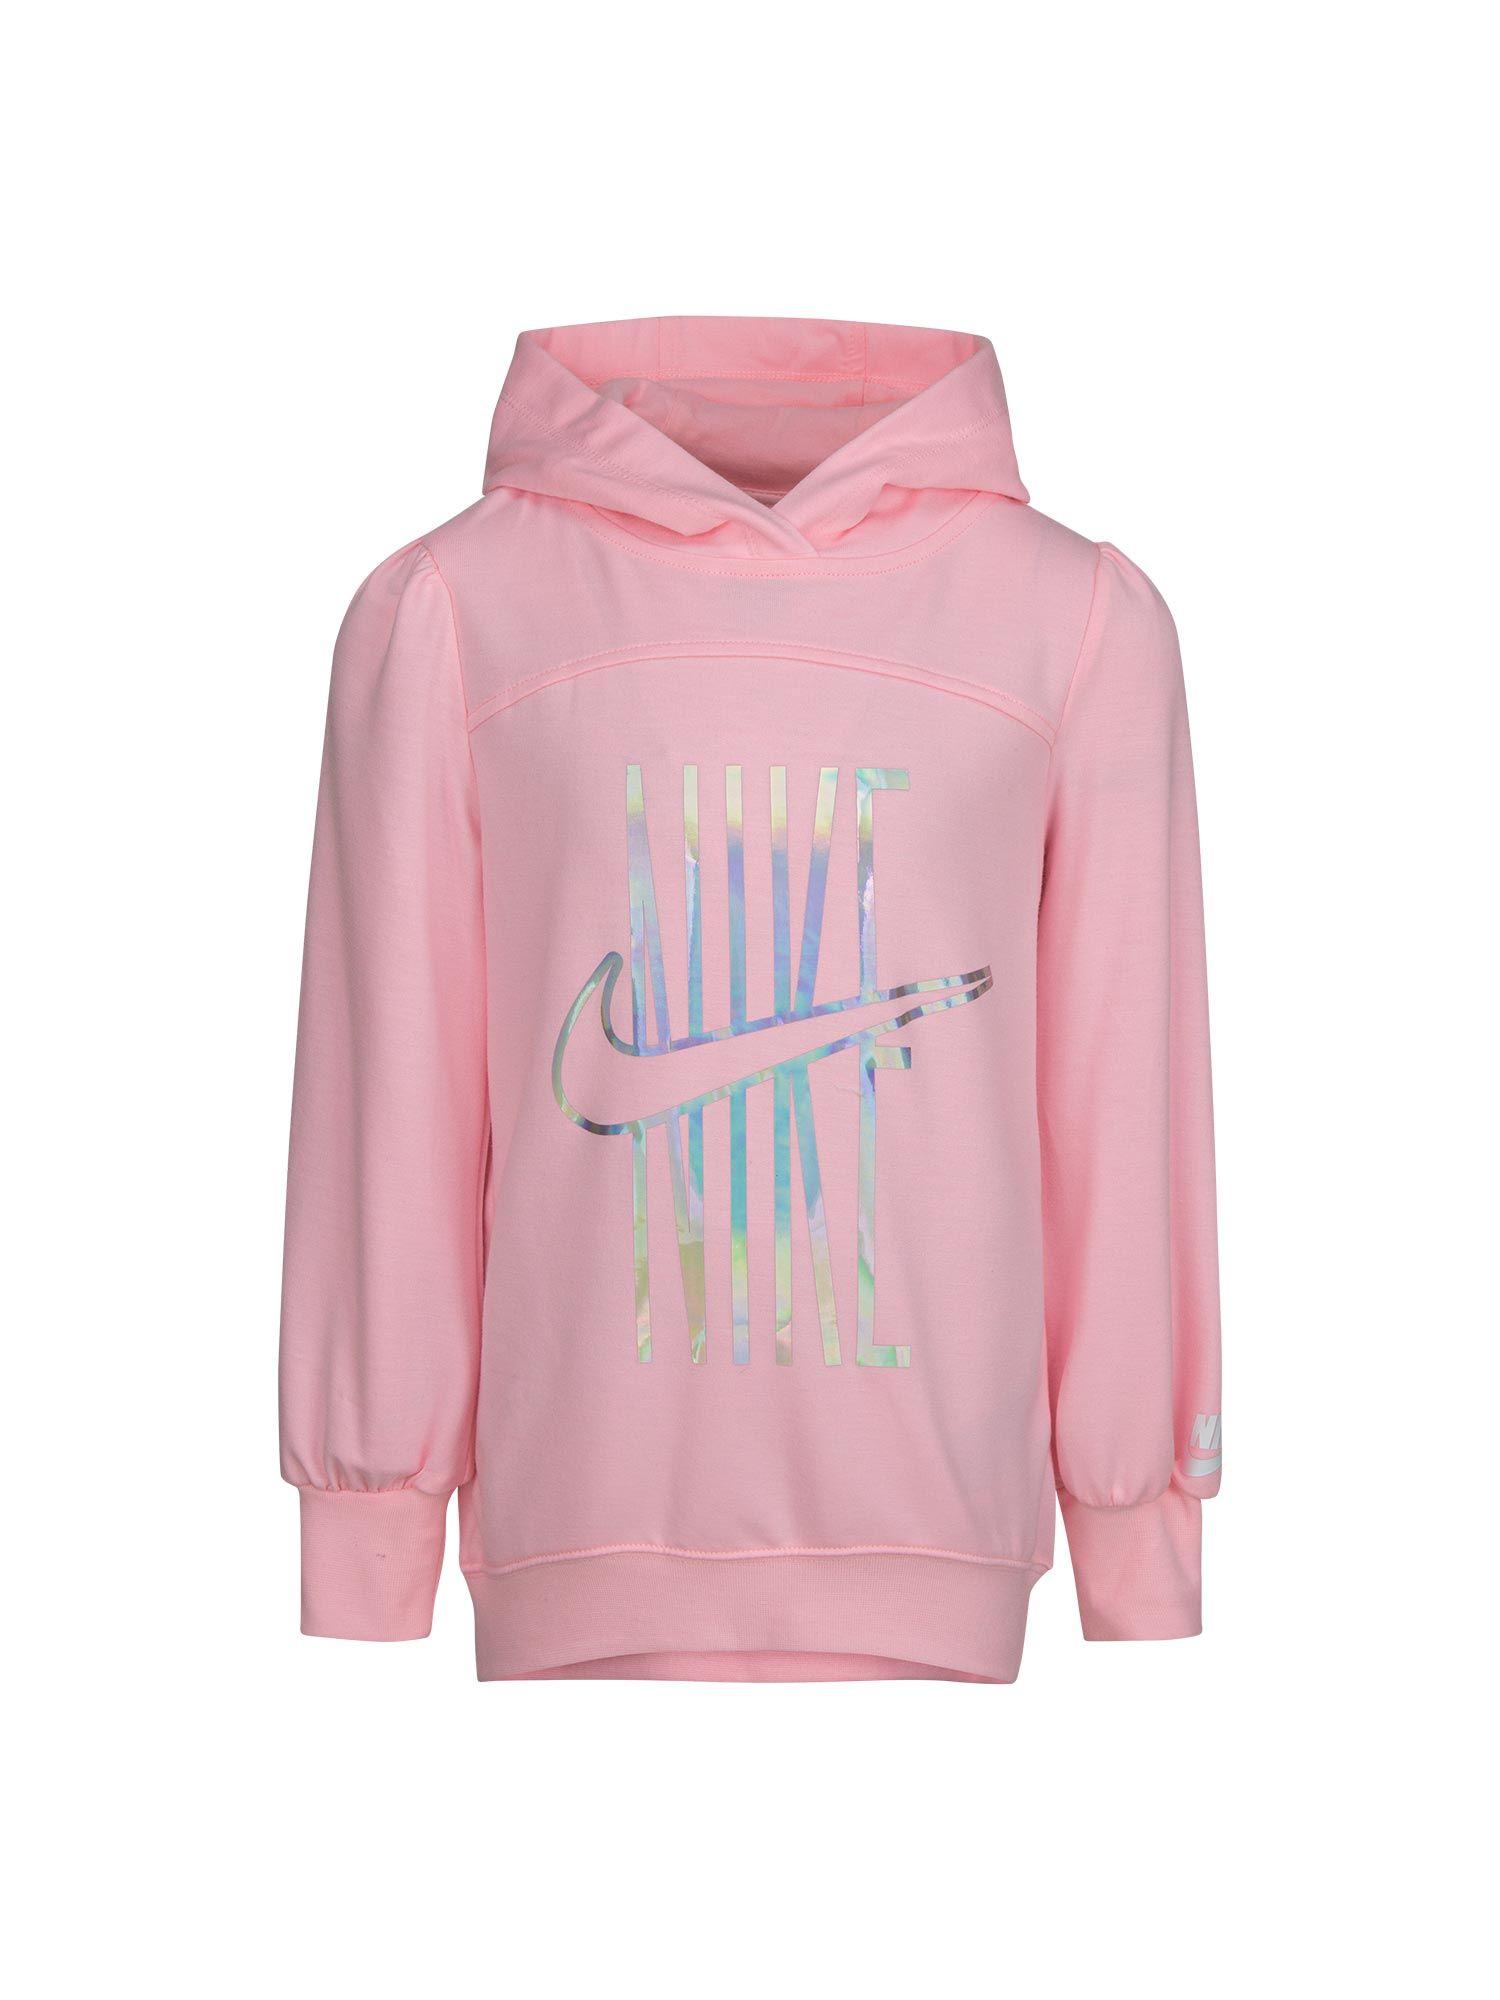 girls-pink-hoodie